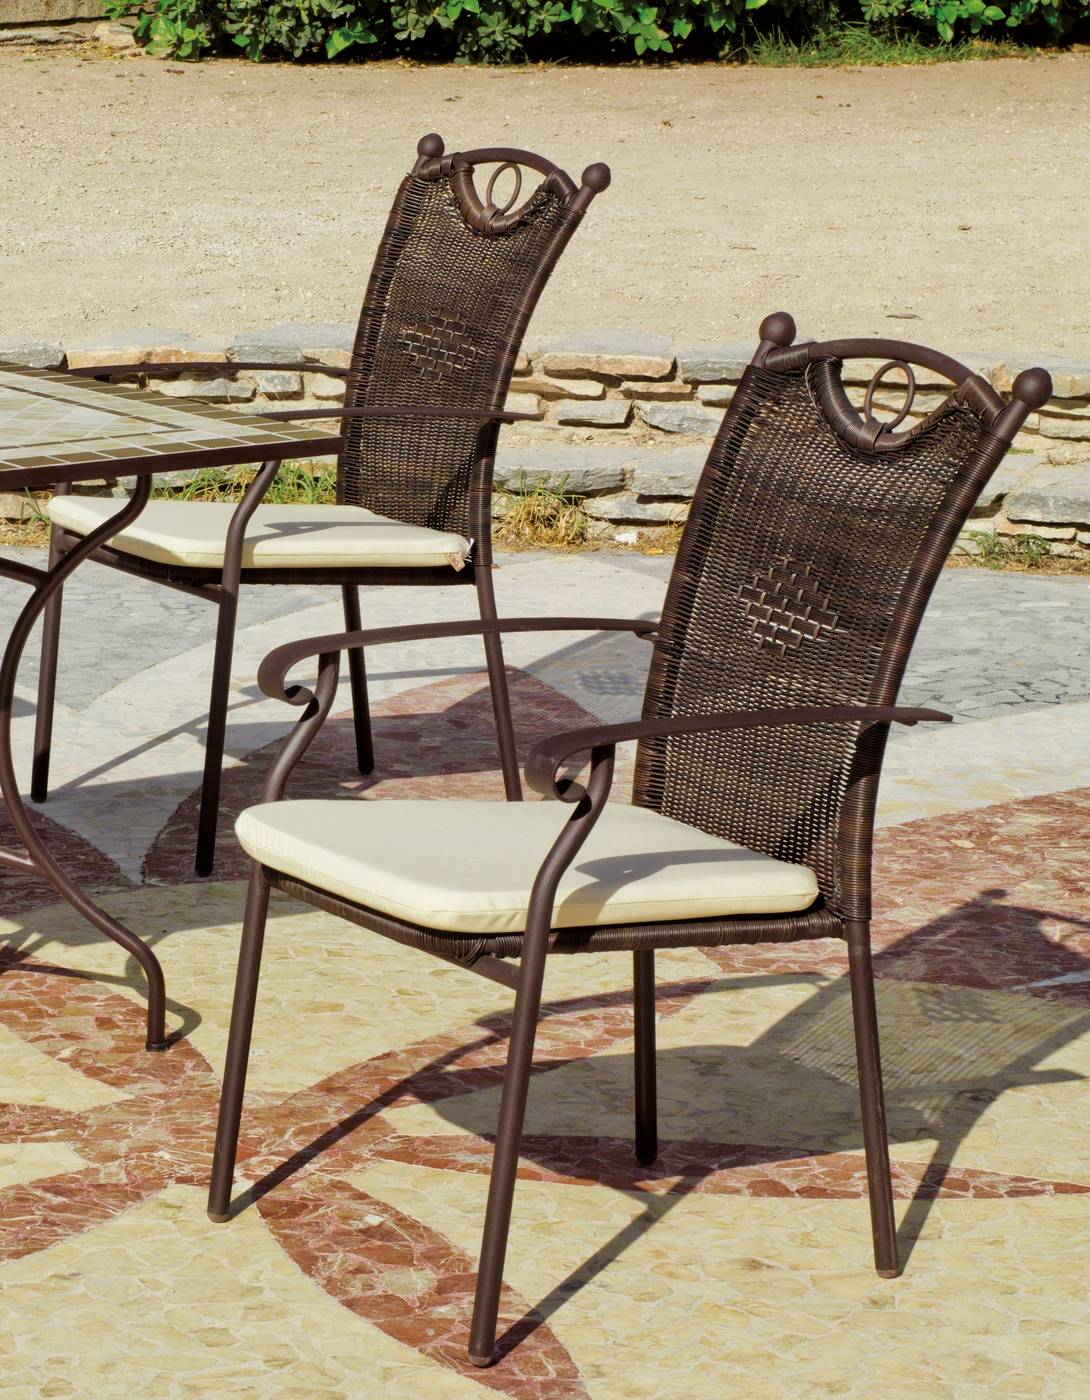 Set Mosaico Marsella/Beldey - Conjunto de forja para jardín: mesa redonda 90 cm. de forja con tablero mosaico + 4 sillones de forja y huitex